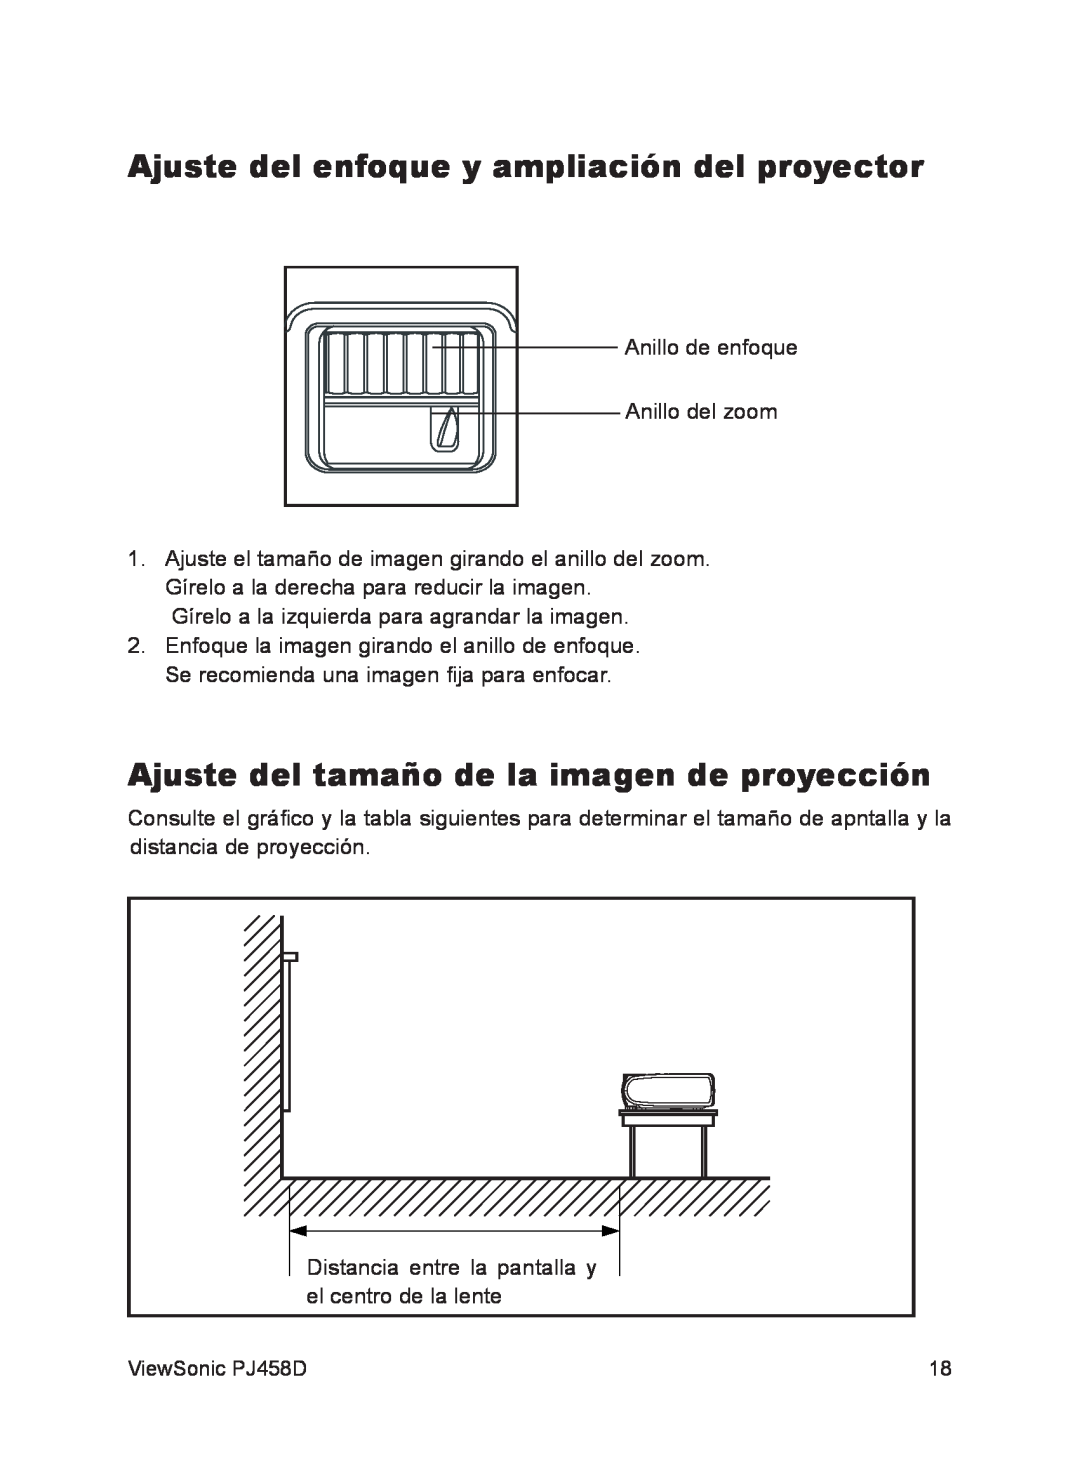 ViewSonic VS10872 manual Ajuste del enfoque y ampliación del proyector, Ajuste del tamaño de la imagen de proyección 